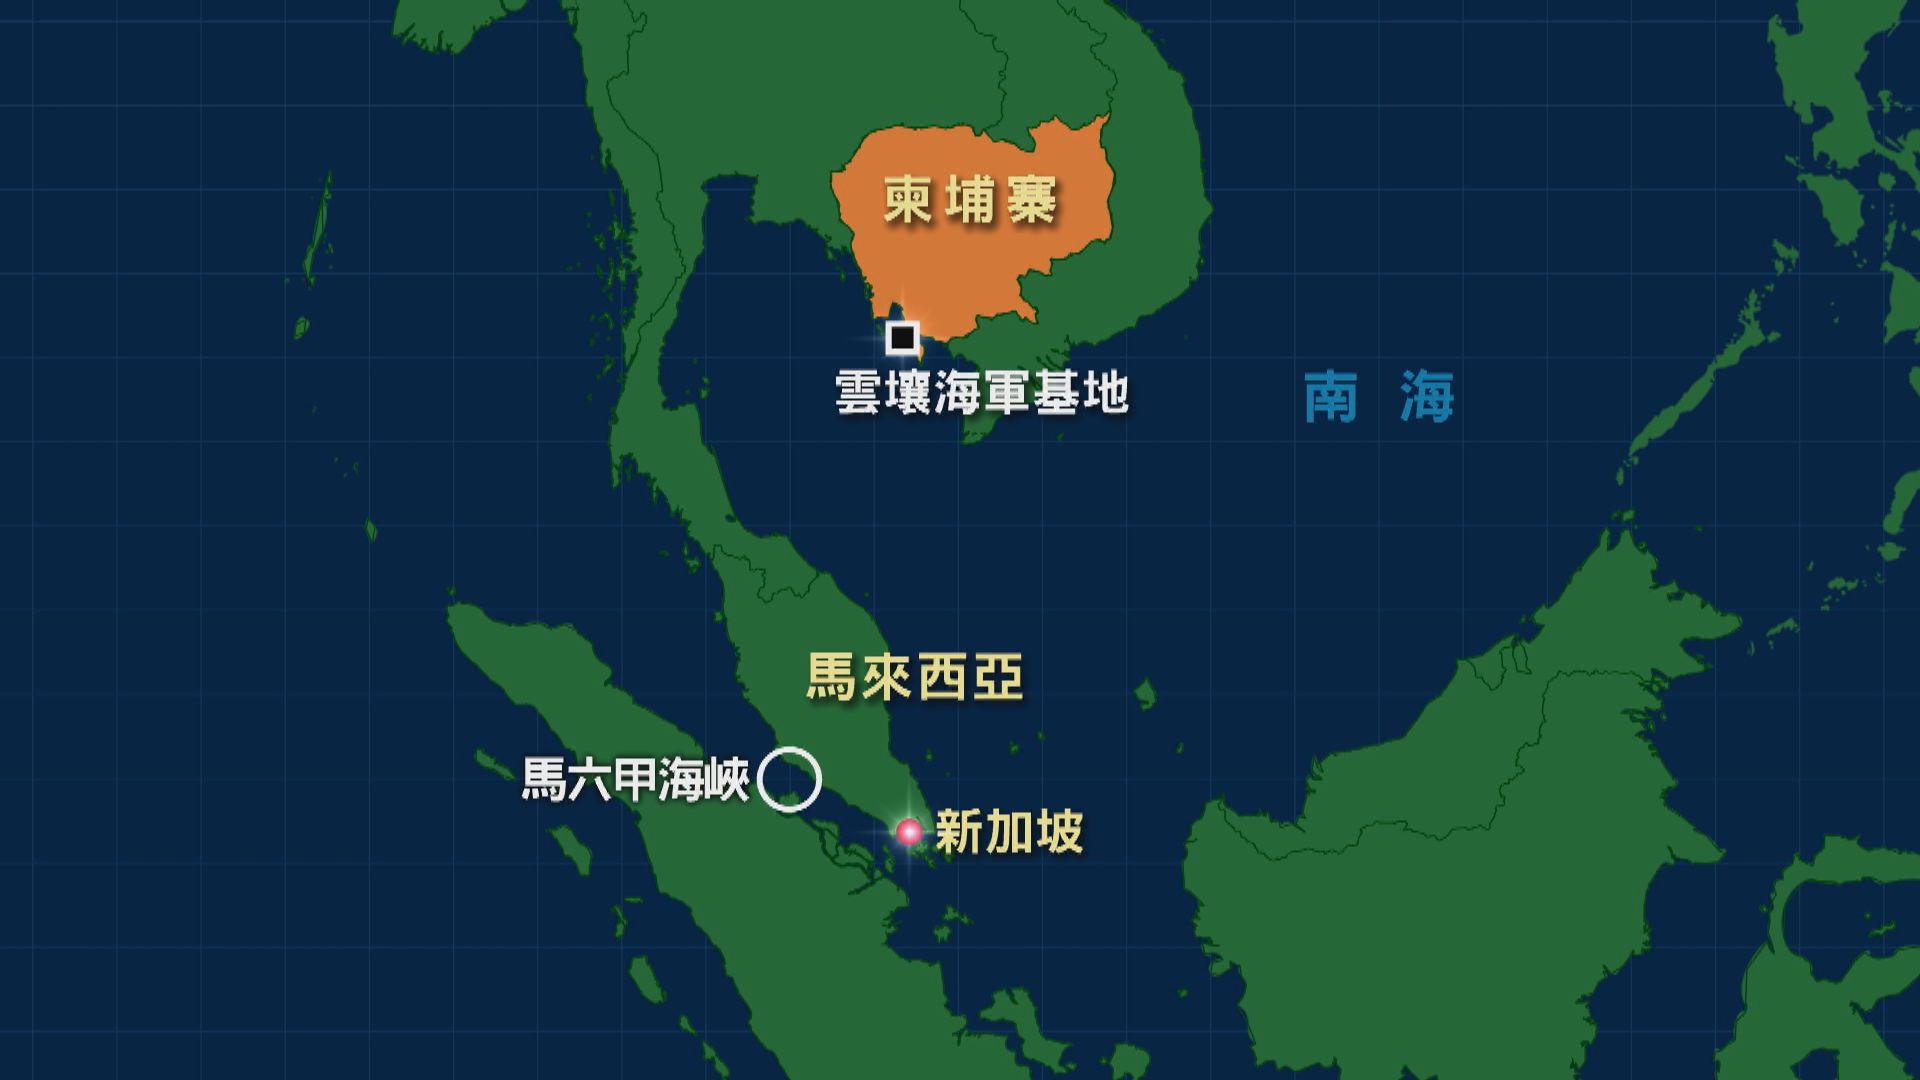 中國軍艦停靠柬埔寨雲壤海軍基地 外交部強調中柬友誼深厚